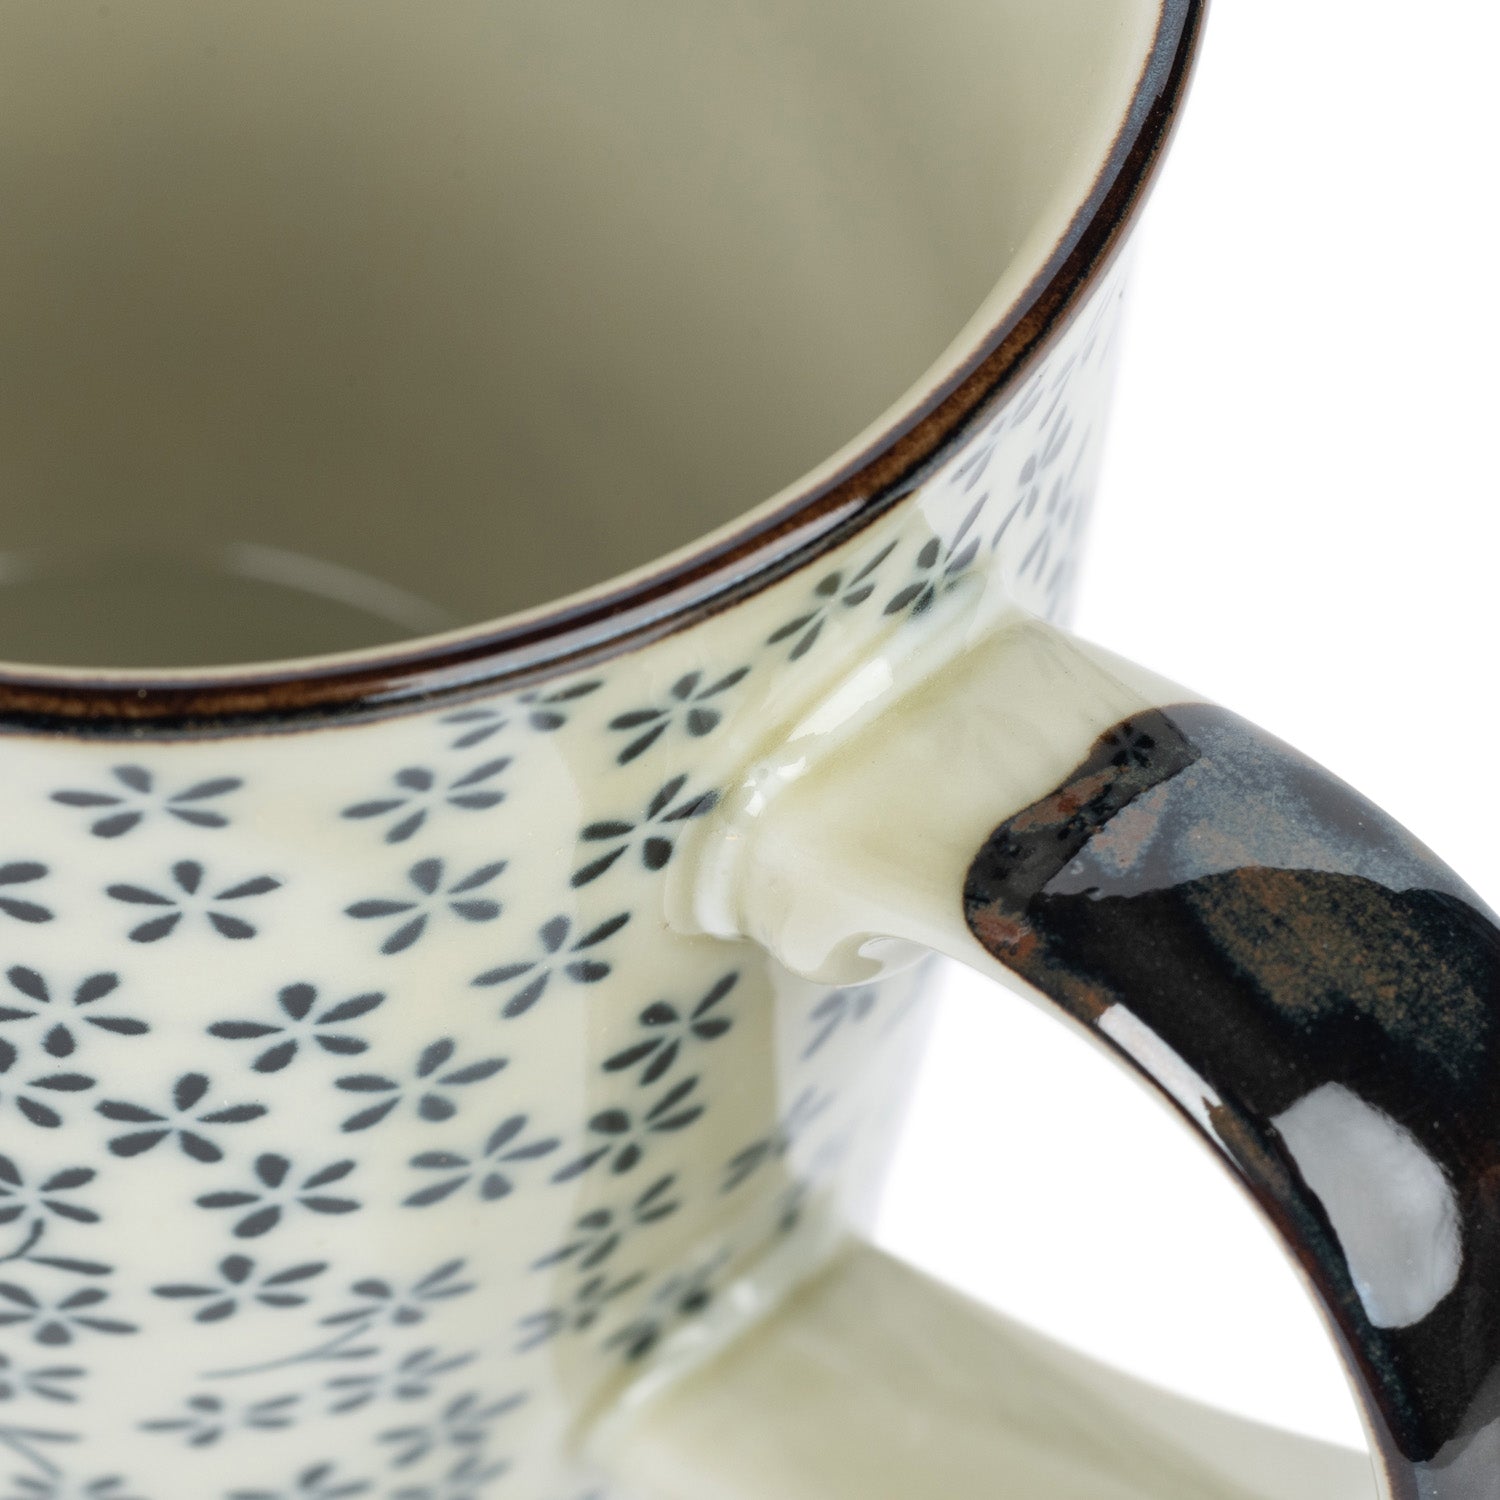 Aikobana Ceramic Japanese Tea Mug detail